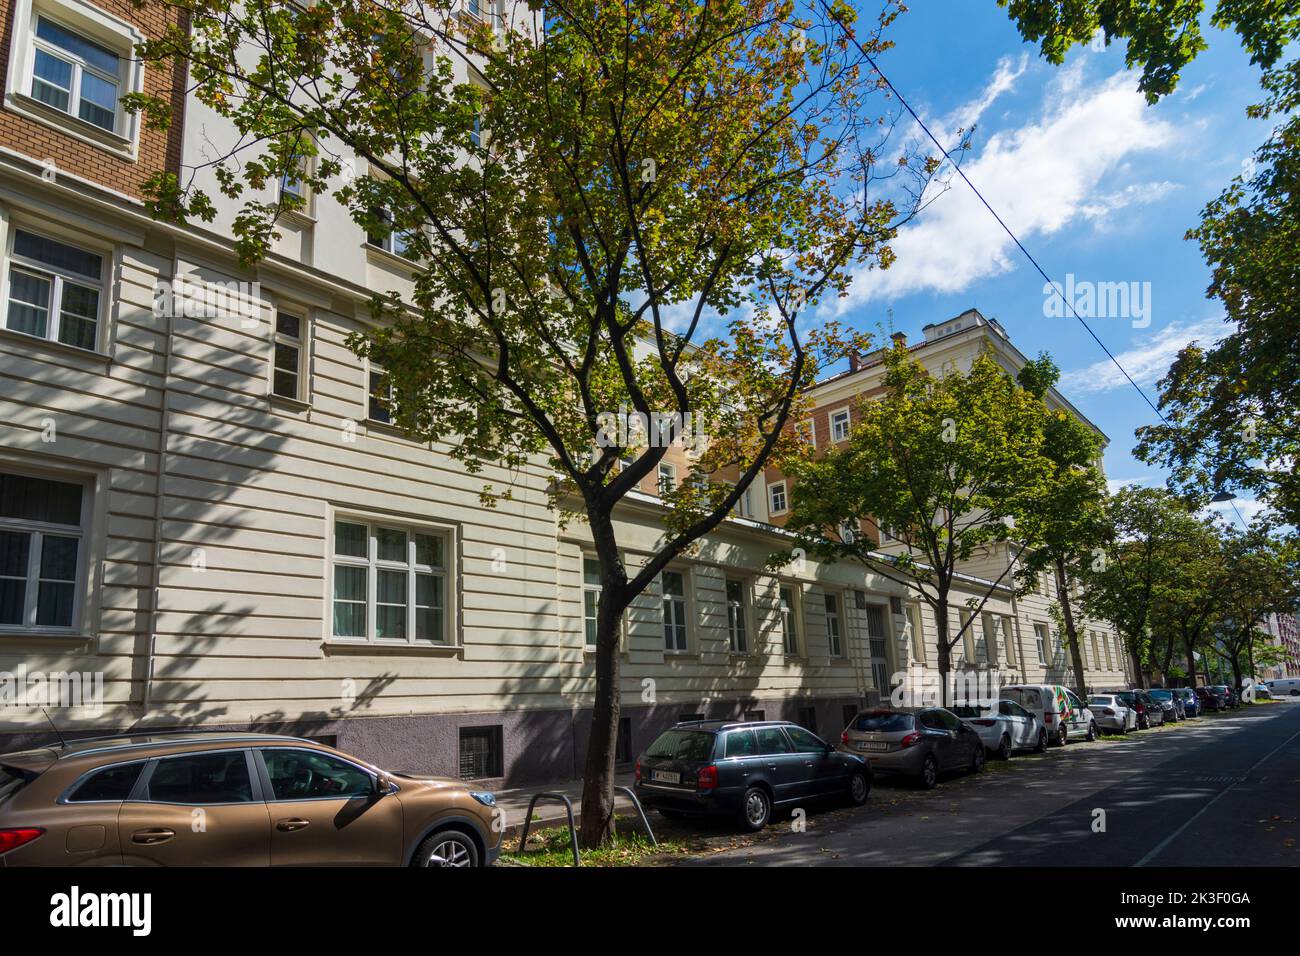 Viena, Viena: El antiguo dormitorio de Meldemannstraße, Adolf Hitler, que en aquel momento estaba desempleado y vivía de la venta de sus pinturas, vivía en el dormitorio Foto de stock